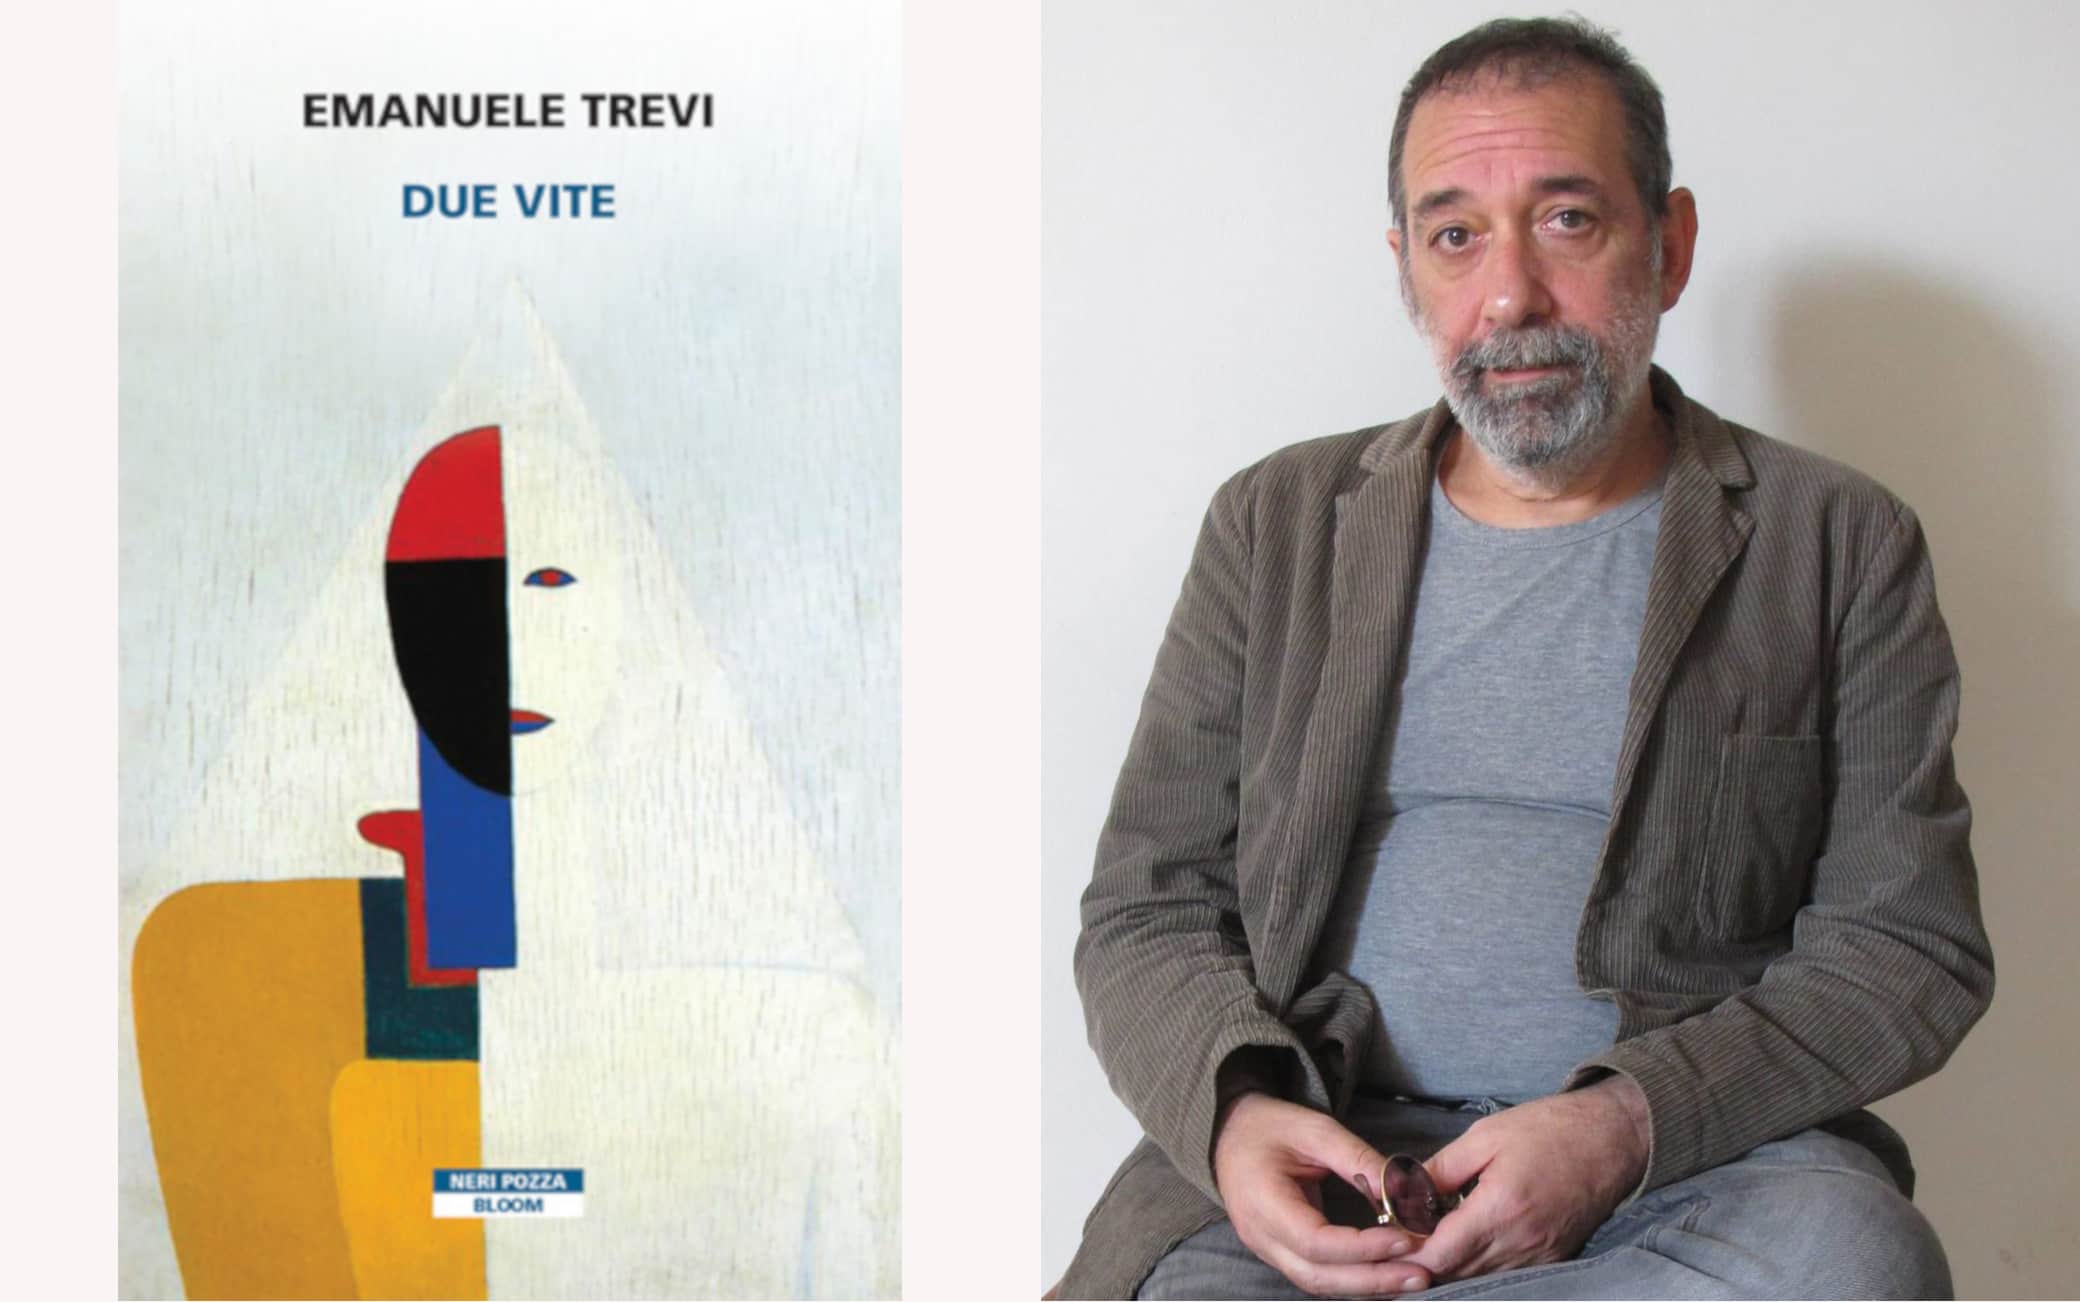 Emanuele Trevi e il suo libro "Due Vite", vincitore del premio Strega di quest'anno